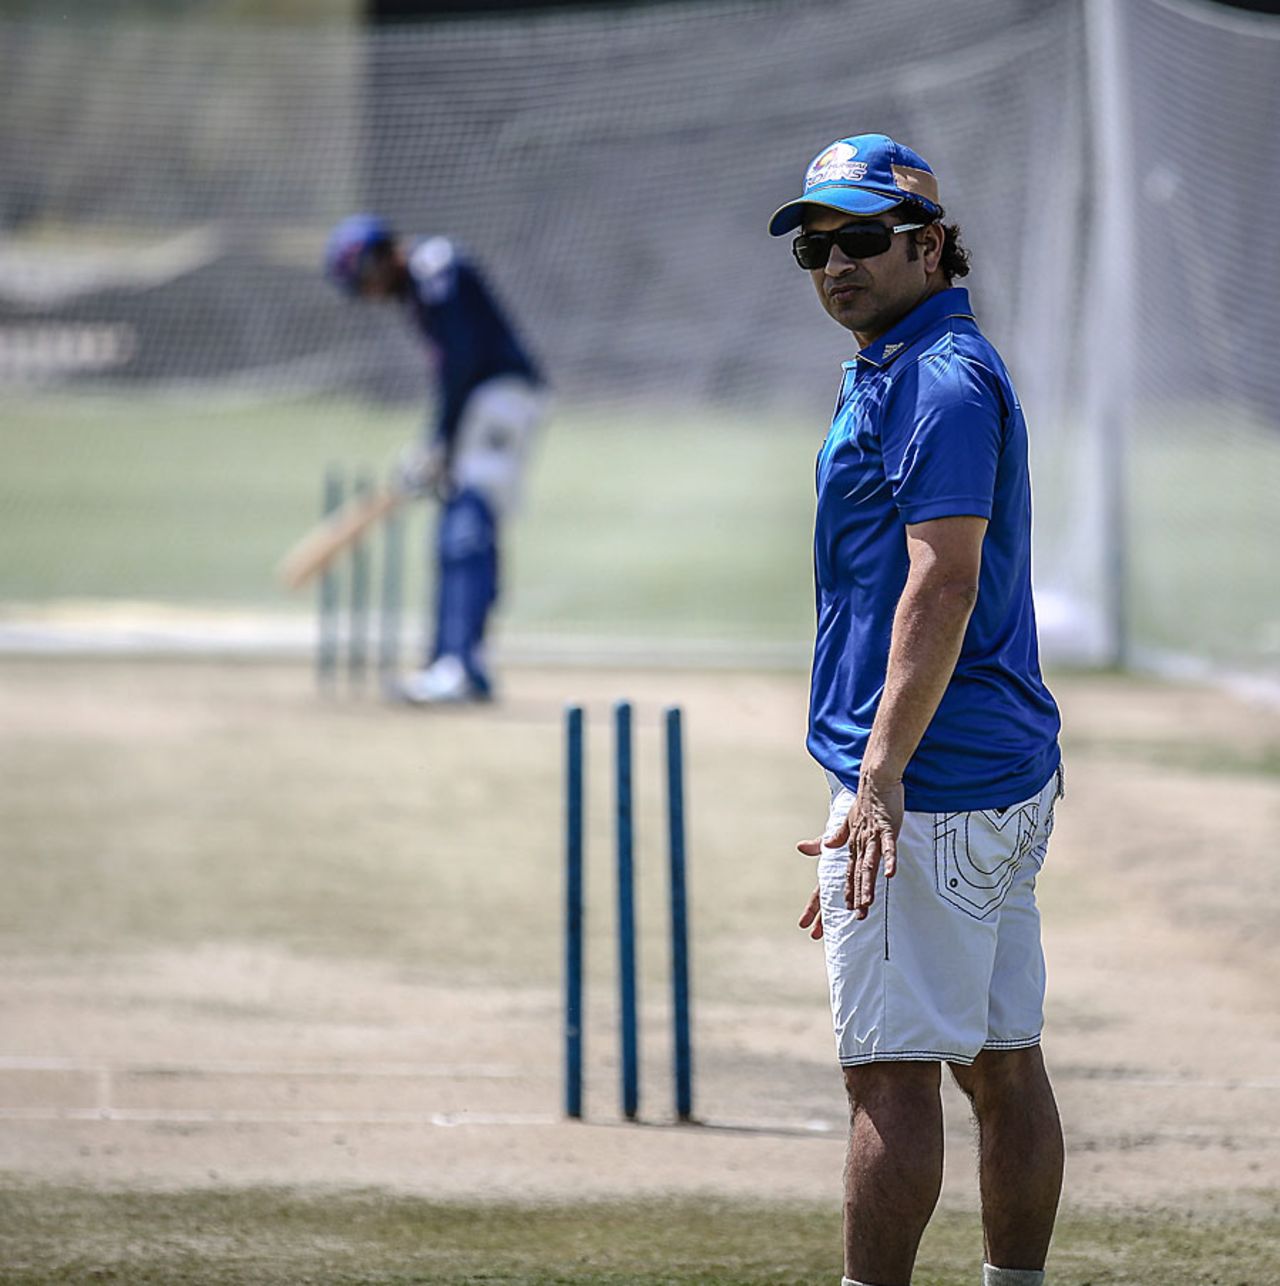 Sachin Tendulkar umpires at the nets, Abu Dhabi, April 15, 2014